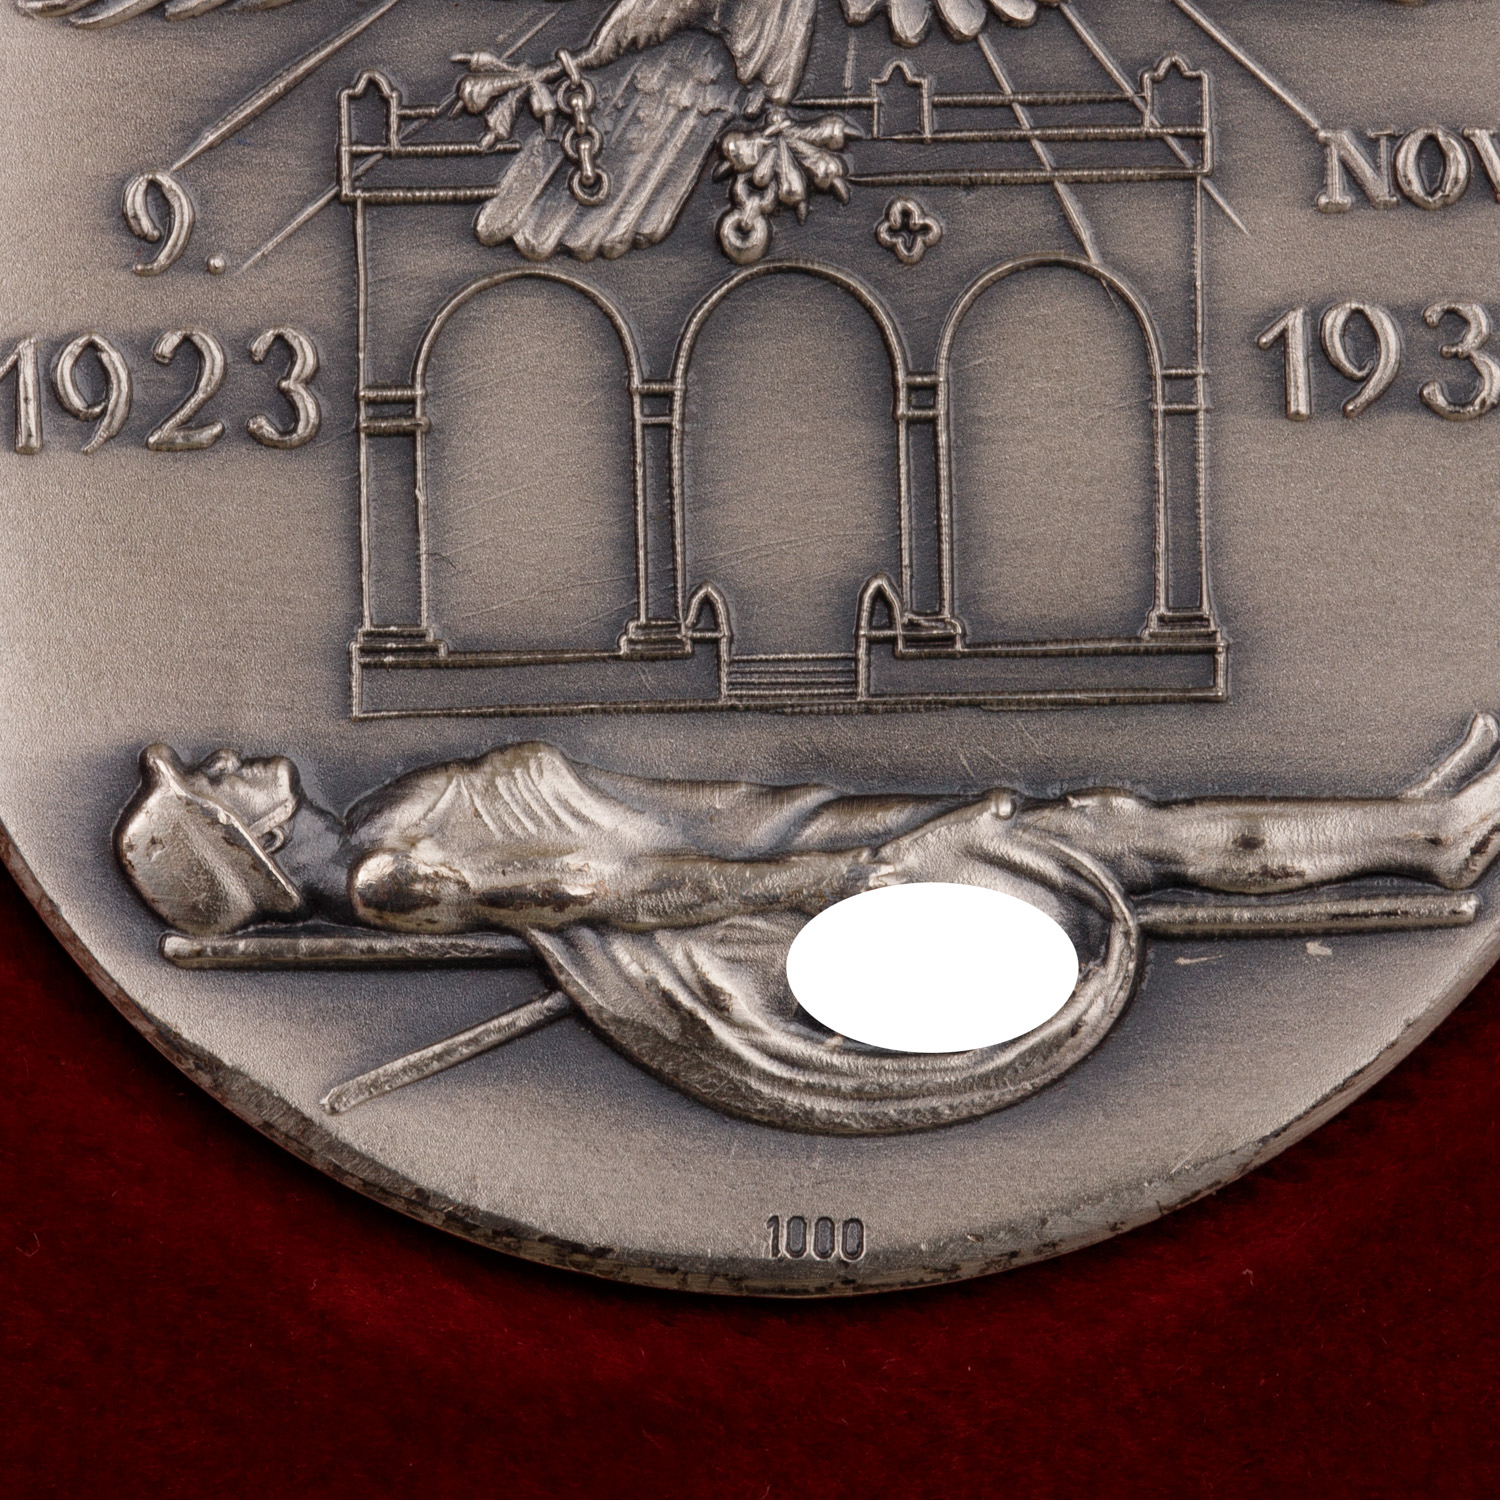 Deutsches Reich 1933-1945 - Extrem selten als Set angebotene Medaillen-Trilogie in GOLD (999), SILBE - Image 5 of 6